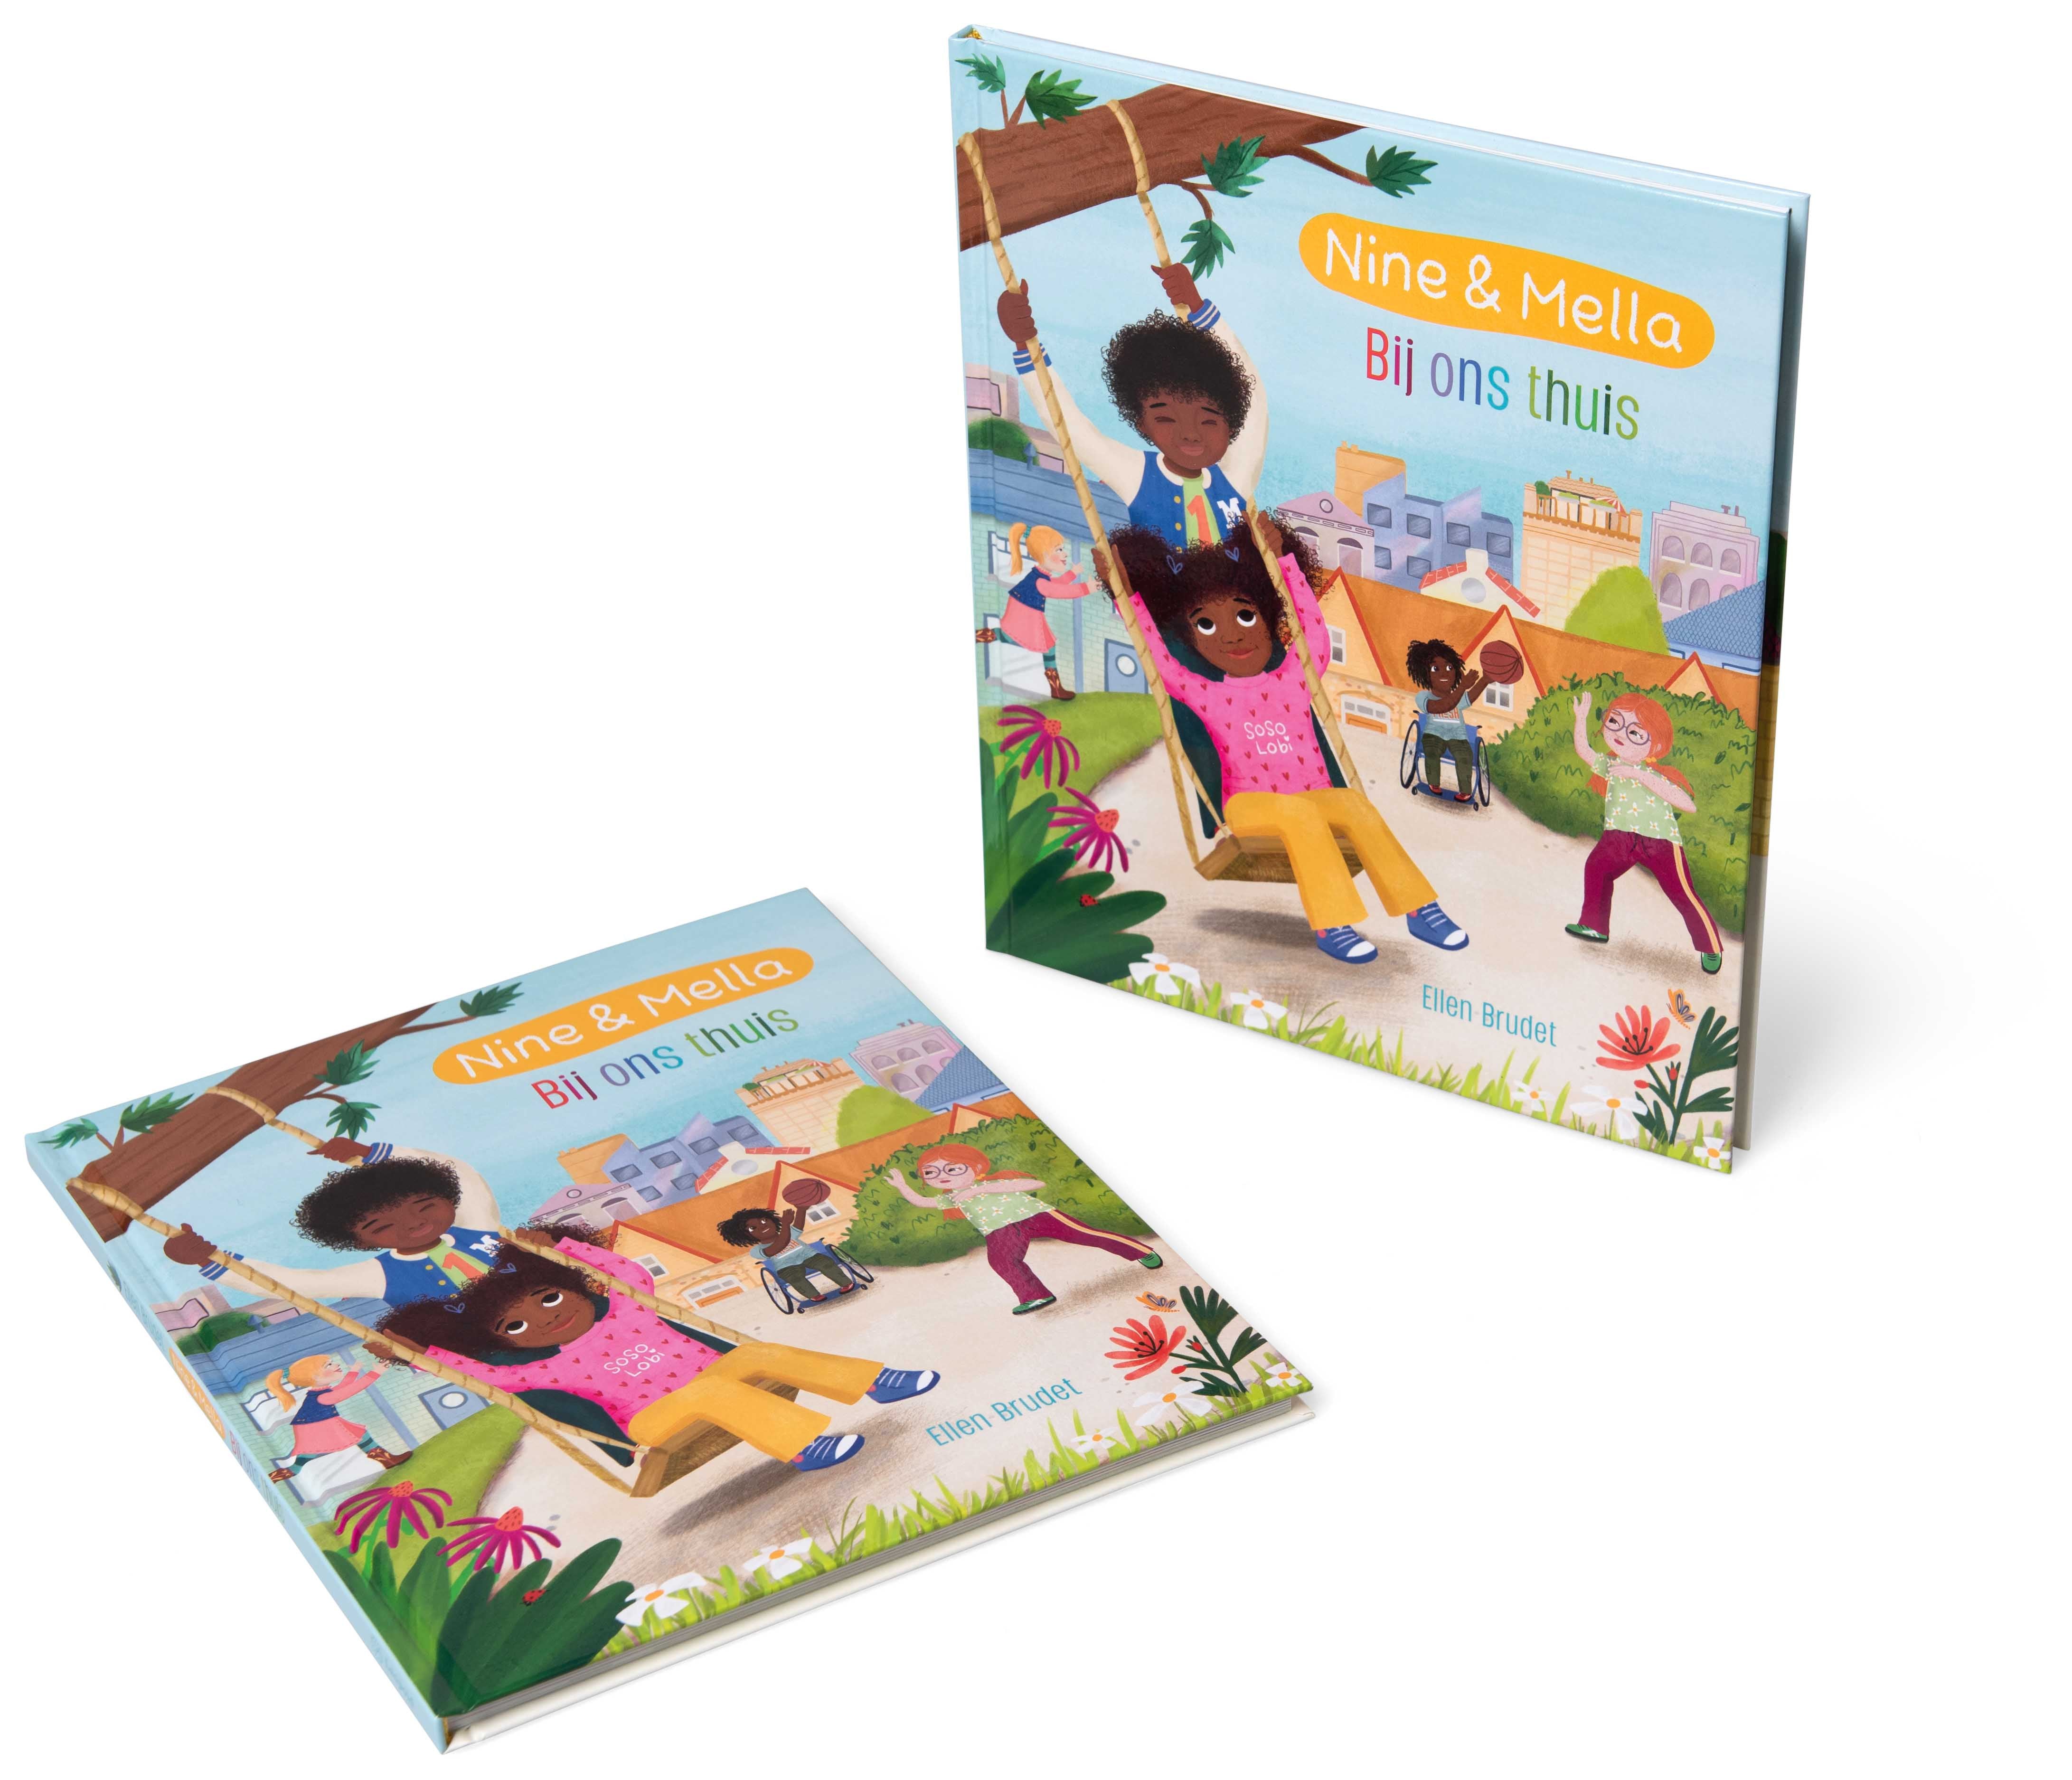 Speel, leer en groei met Nine & Mella - Bij ons thuis van Colourful Goodies - Inclusiviteit in elk detail.